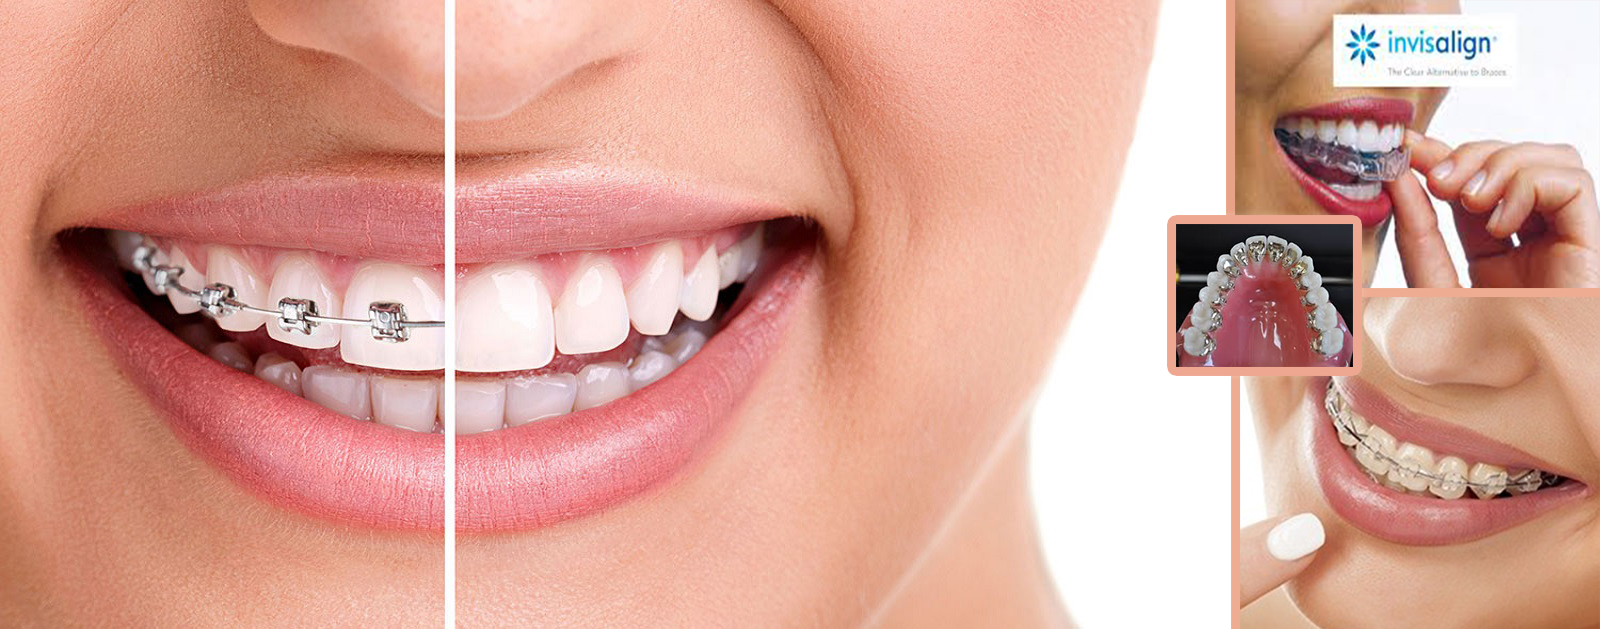 Dental Care Solution - Dentist & Orthodontist